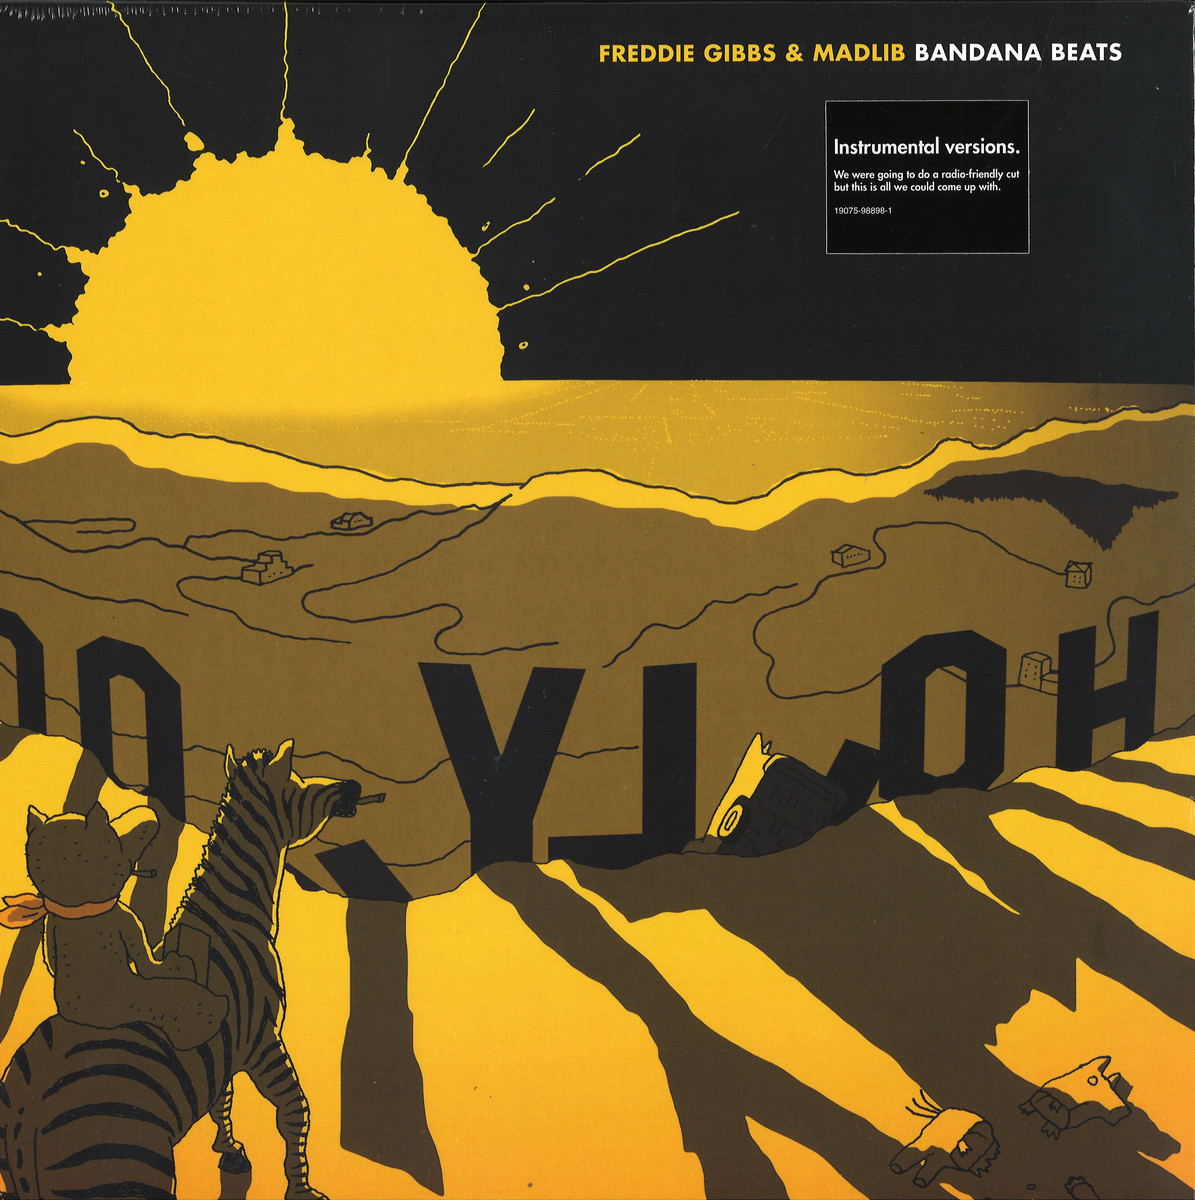 FREDDIE GIBBS & MADLIB - BANDANA BEATS / Madlib Invasion 19075988981 - Vinyl